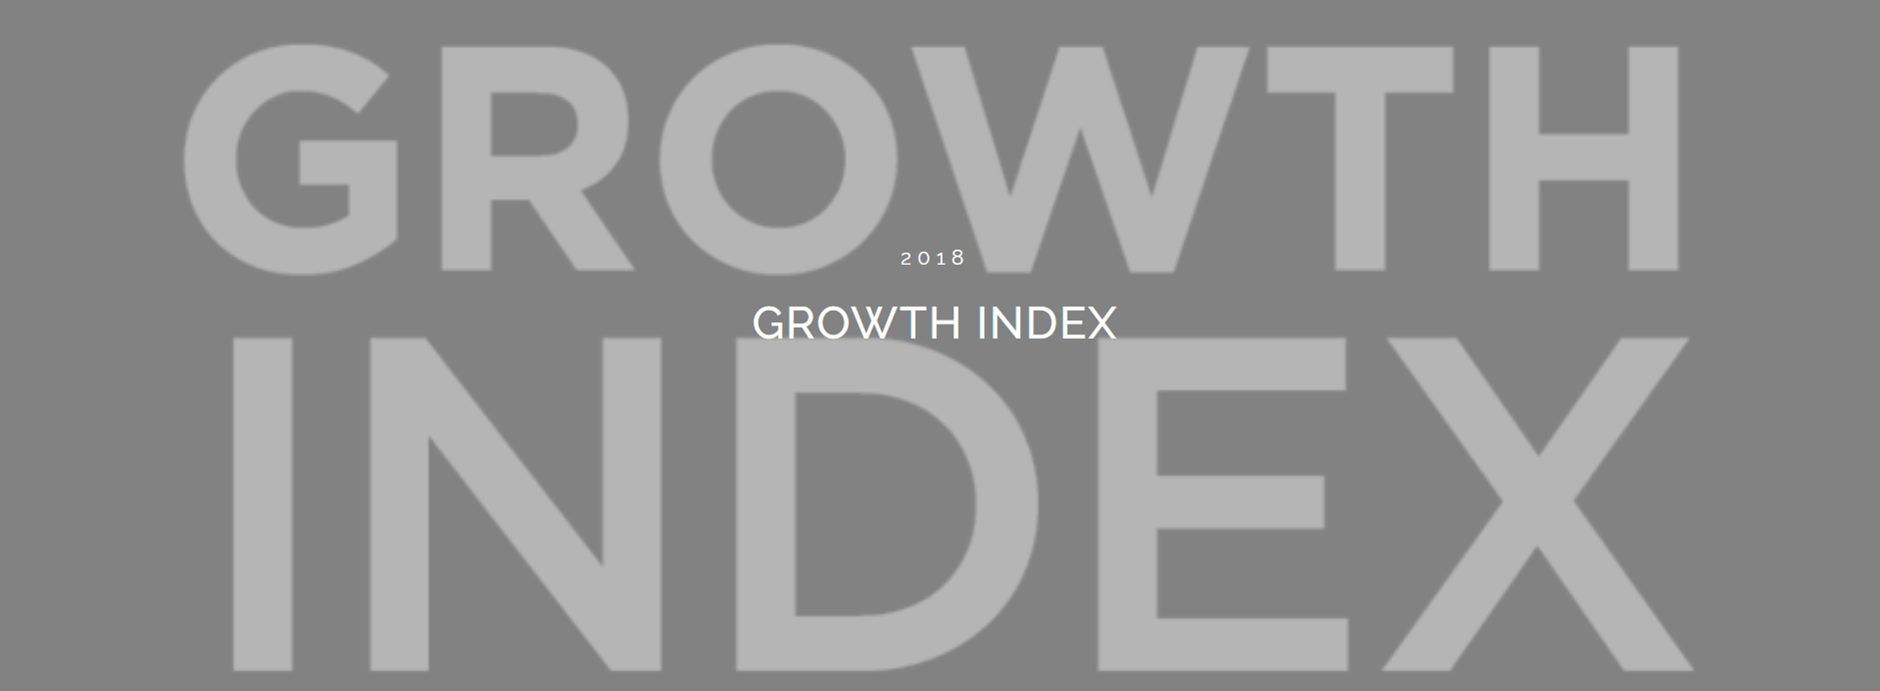 Growth Index_Blog_Header